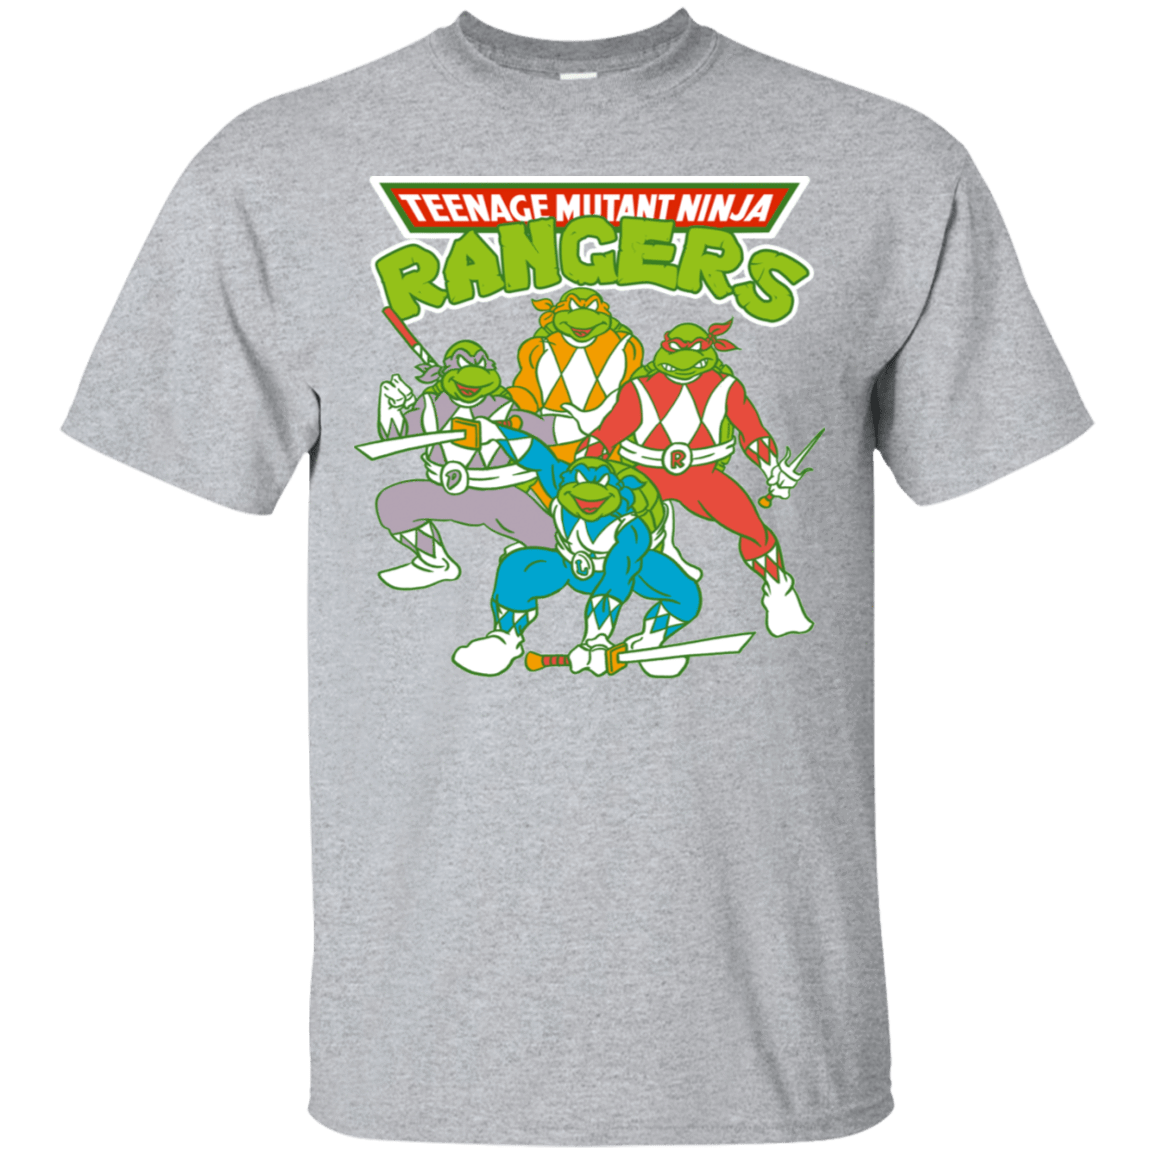 T-Shirts Sport Grey / S Teenage Mutant Ninja Rangers T-Shirt